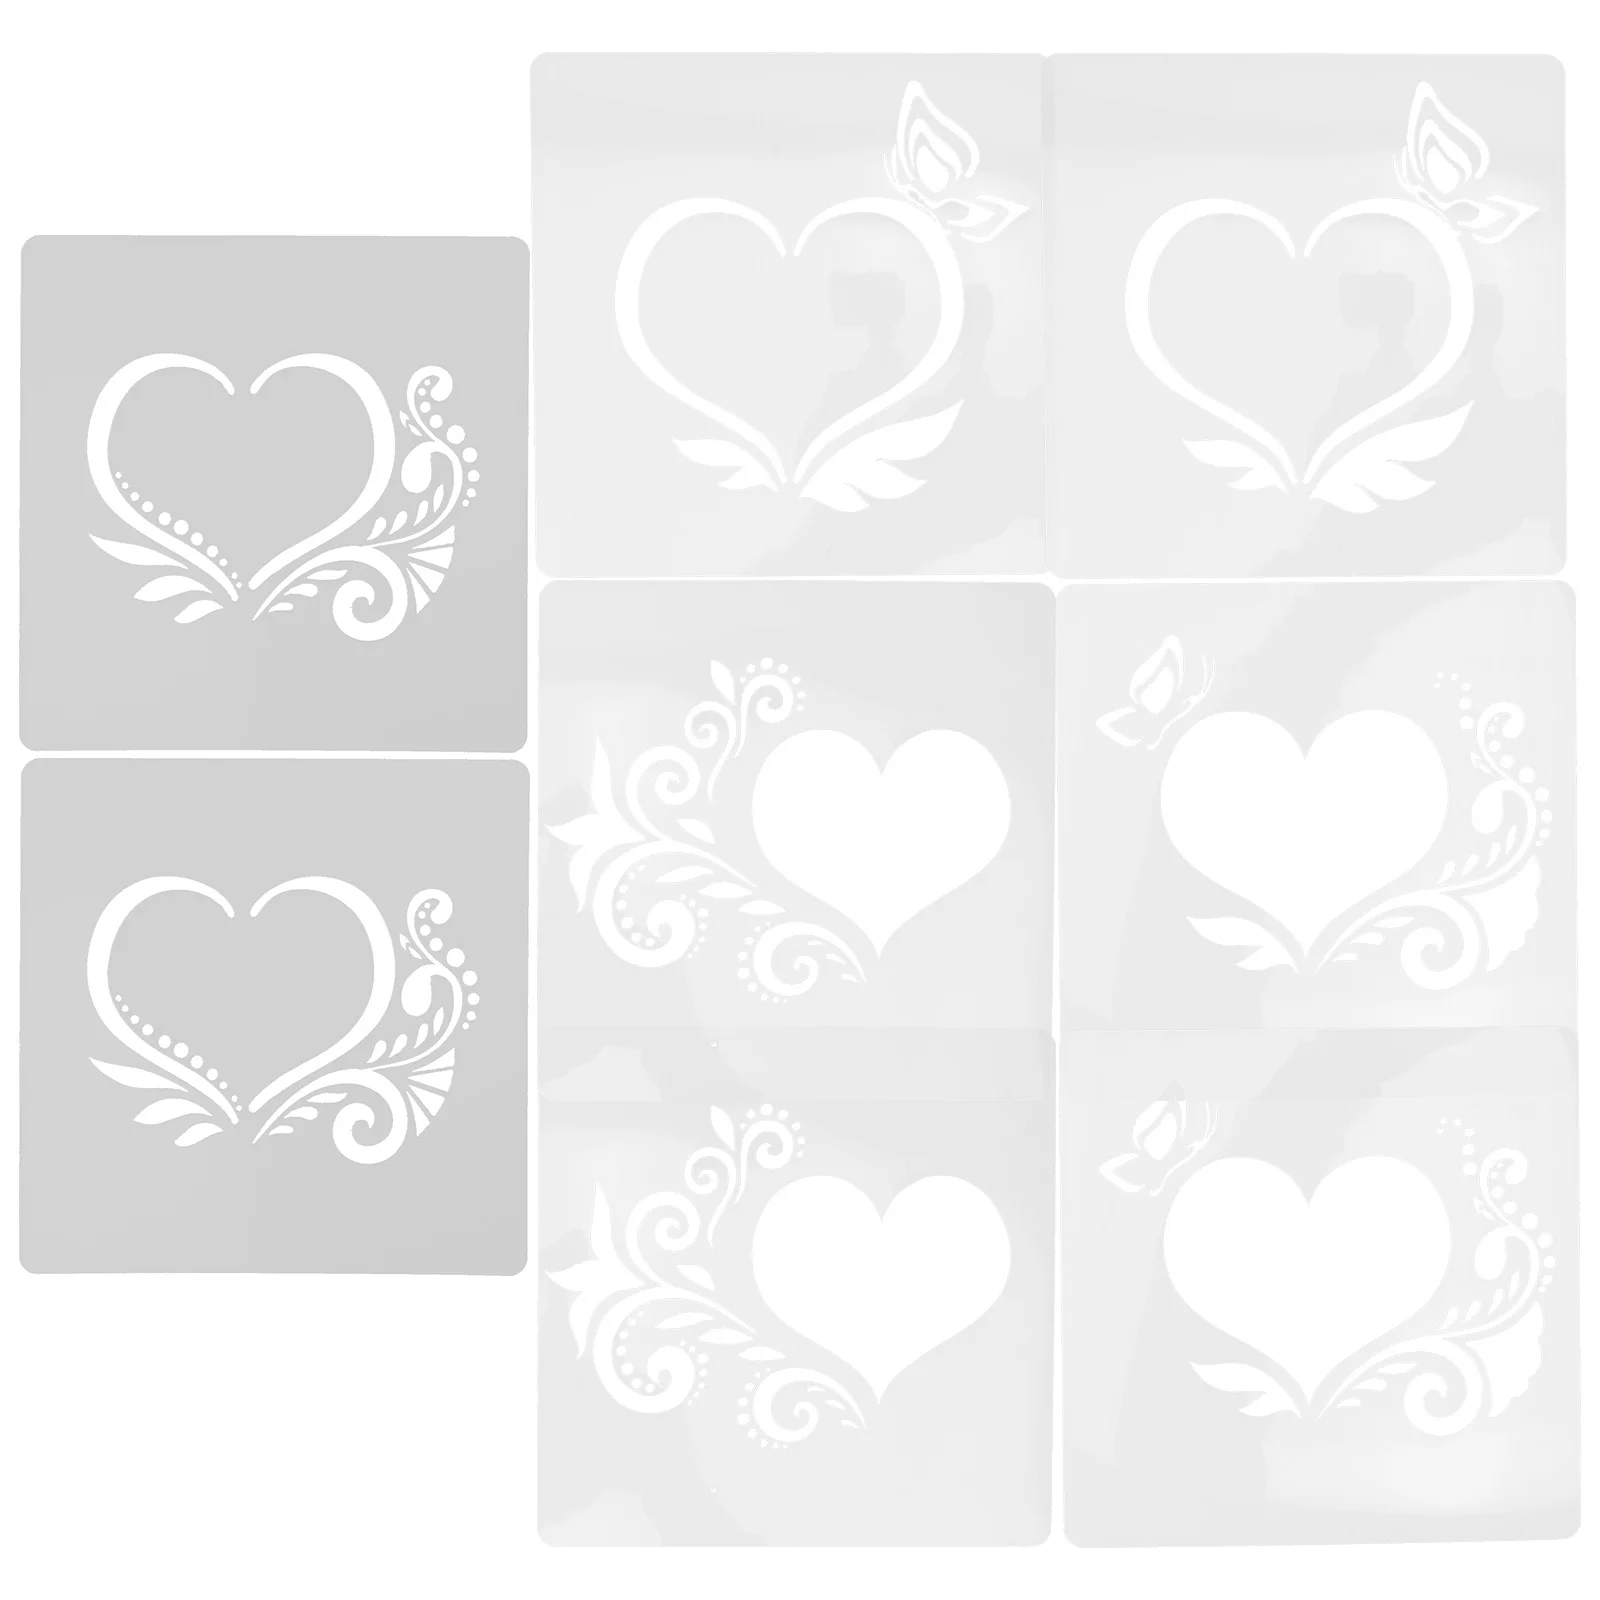 8 Листов краски Форма для распыления цветов на День Святого Валентина Креативные шаблоны для рисования Обои Пластиковые трафареты Белый рисунок